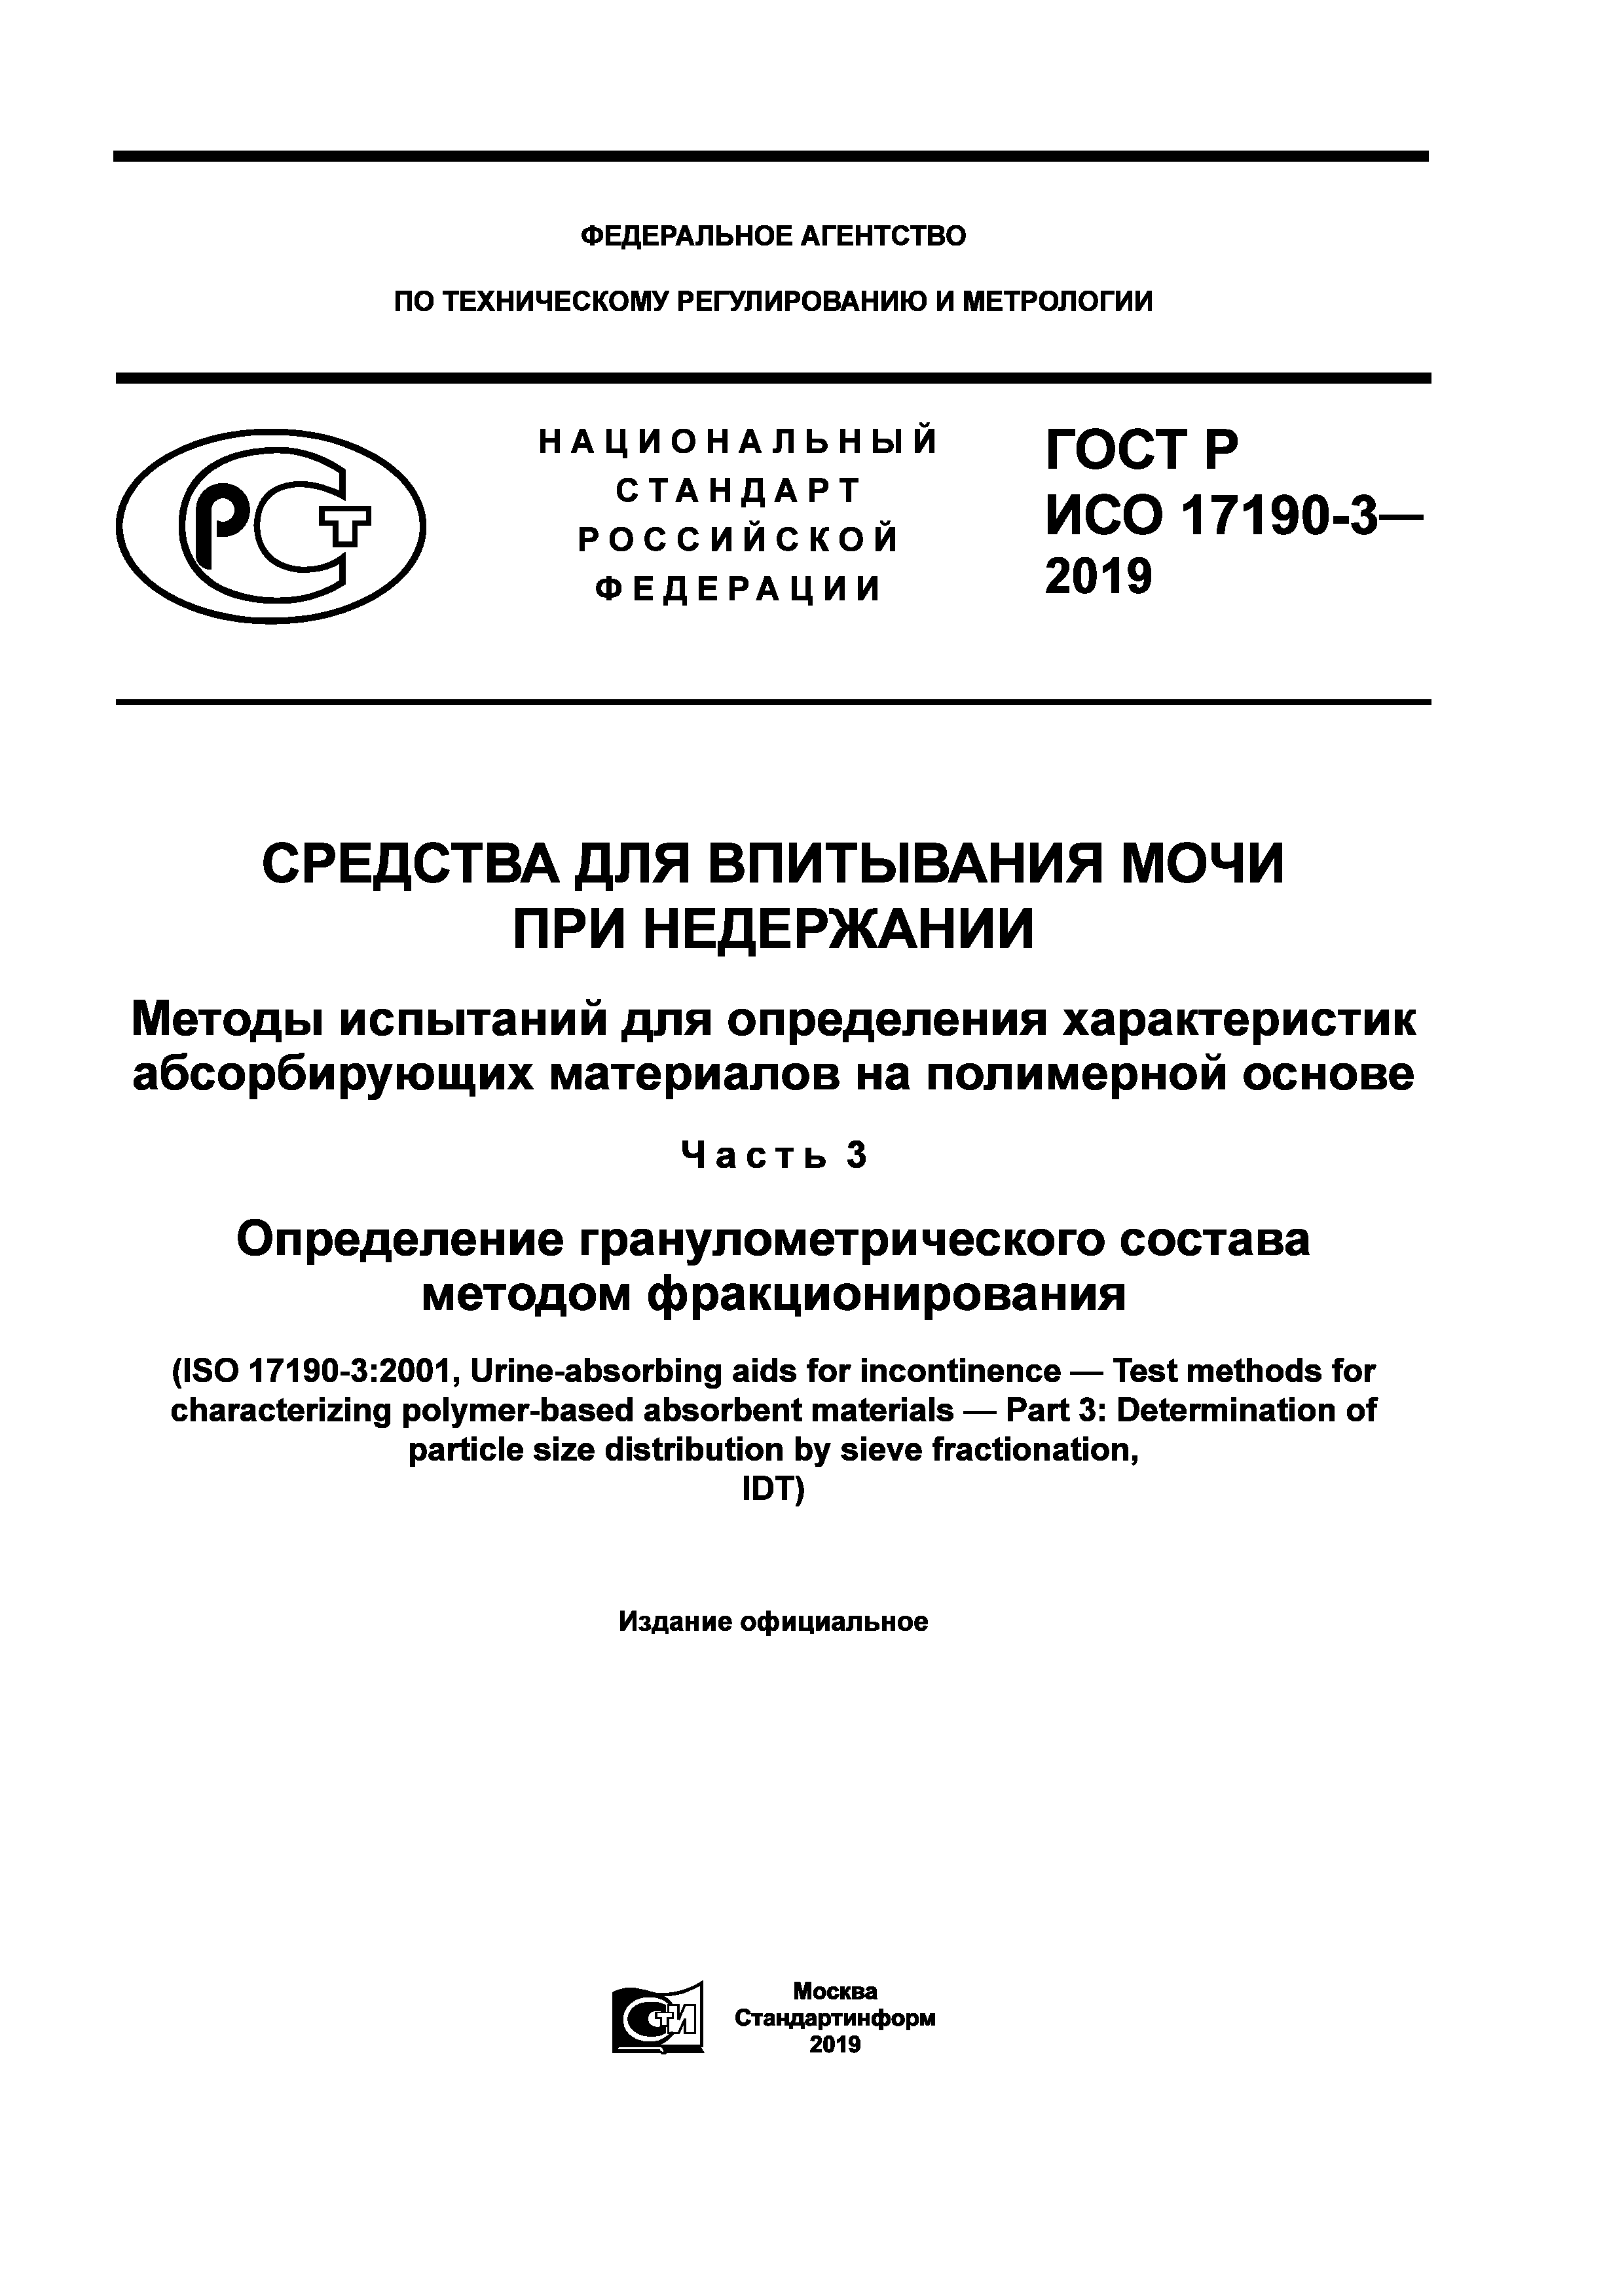 ГОСТ Р ИСО 17190-3-2019